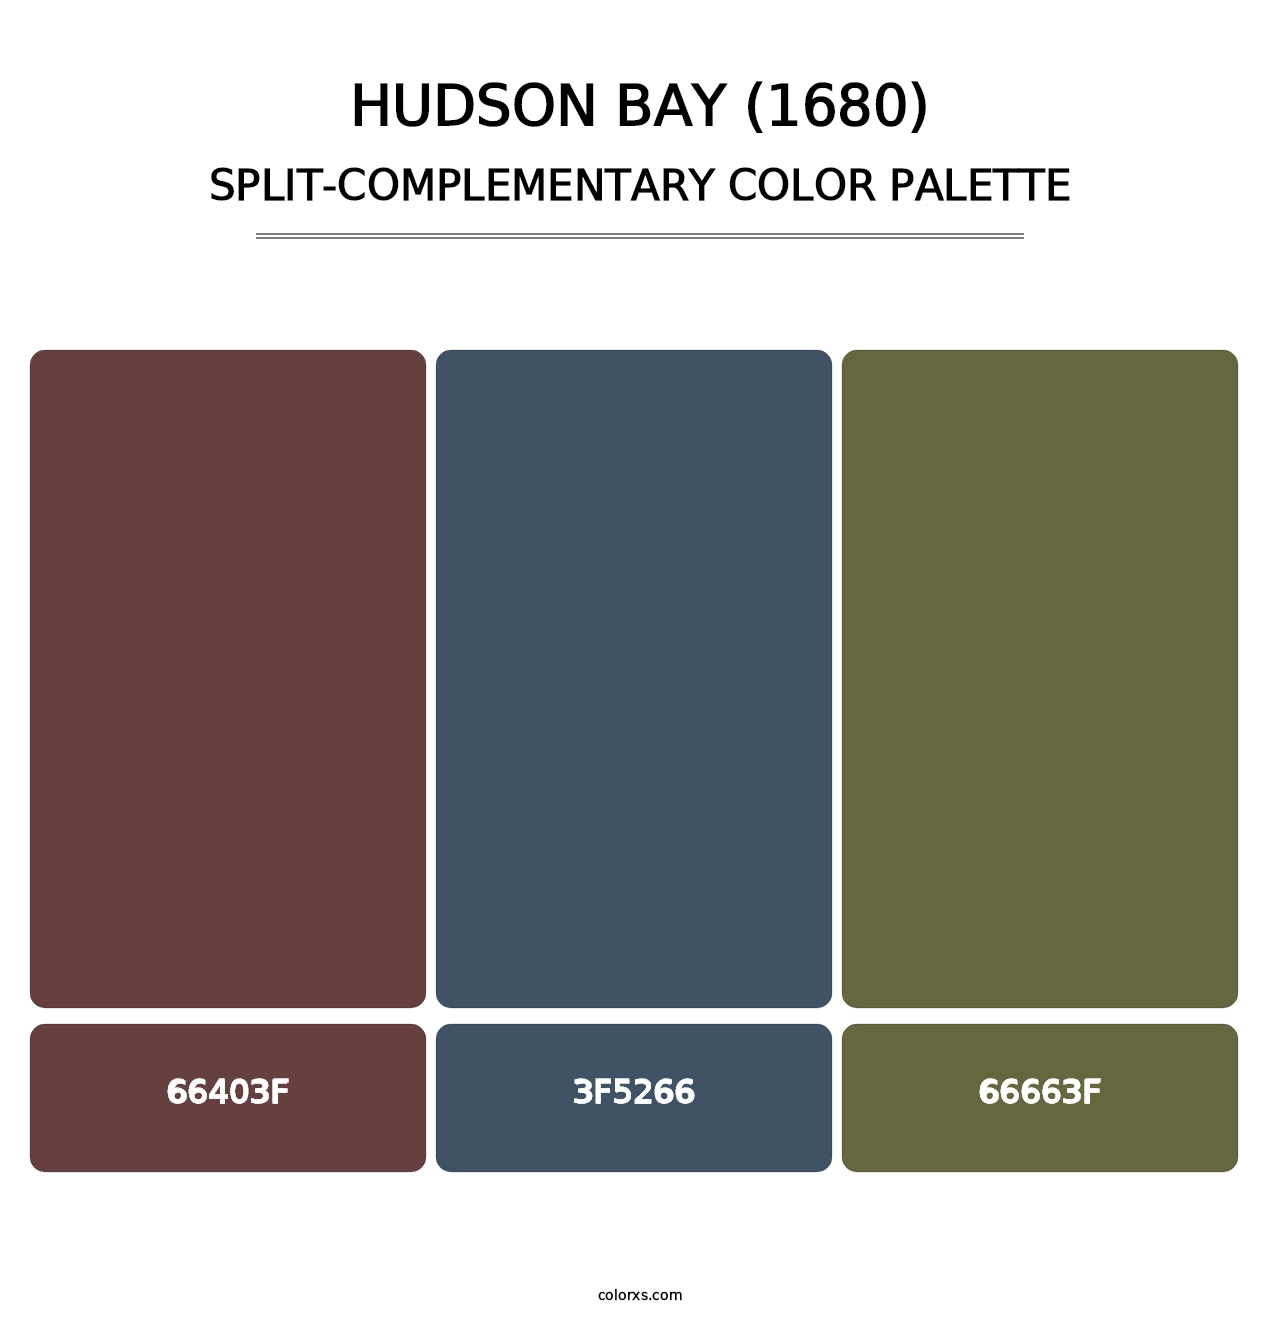 Hudson Bay (1680) - Split-Complementary Color Palette